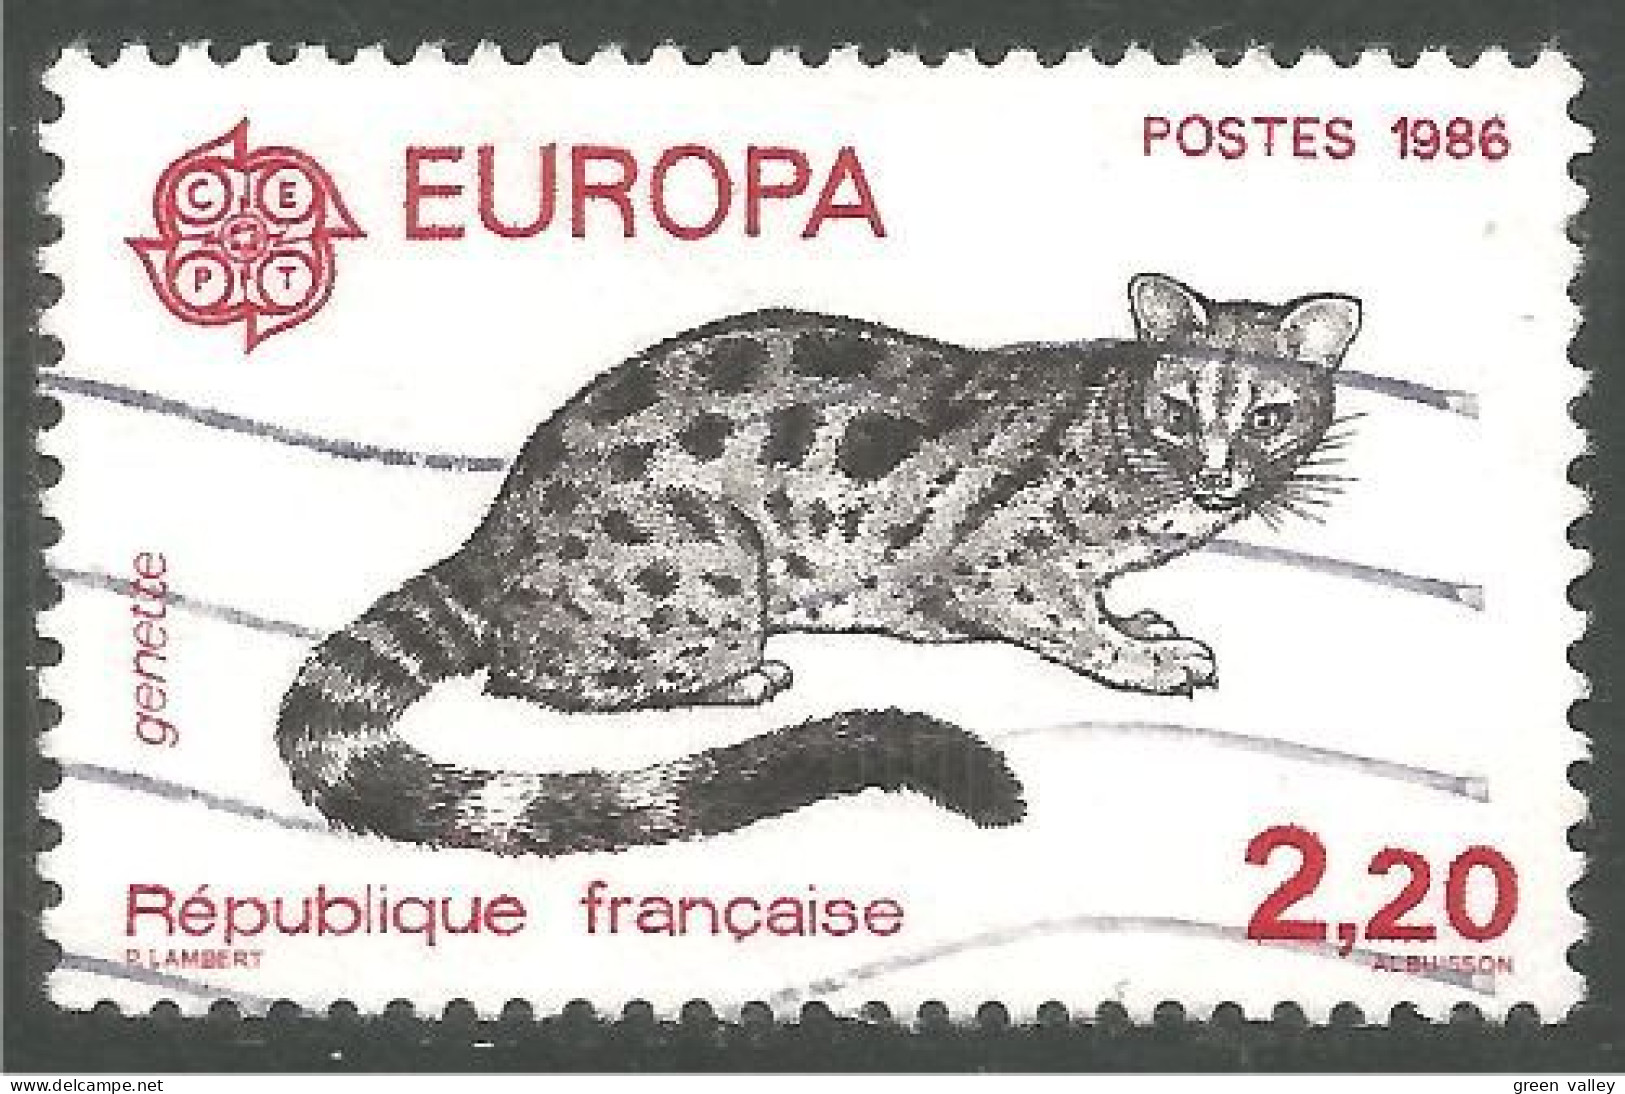 EU86-30 EUROPA CEPT 1986 France Genette Genet - 1986